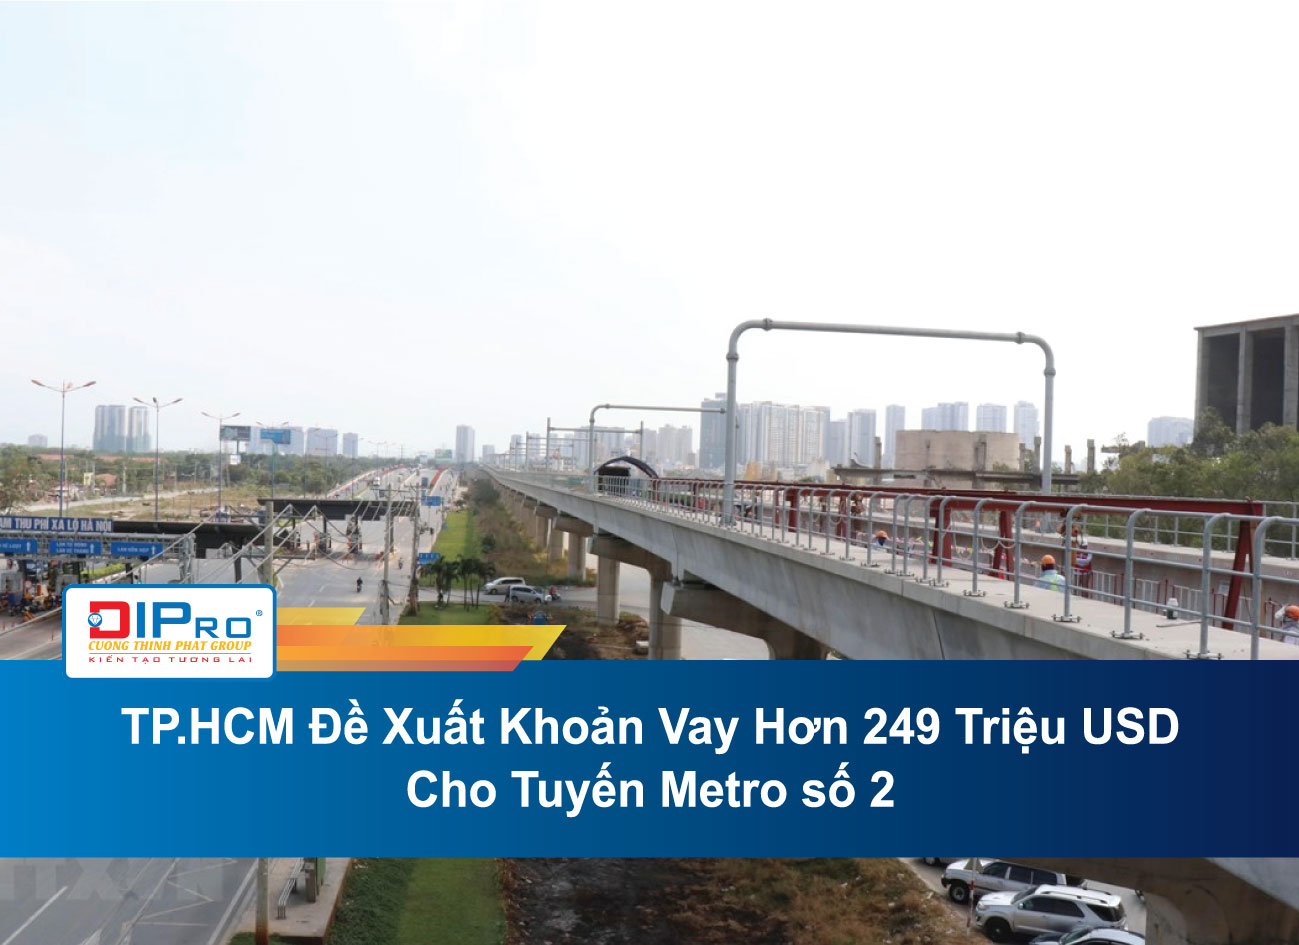 TP.HCM-De-Xuat-Khoan-Vay-Hon-249-Trieu-USD-Cho-Tuyen-Metro-so-2